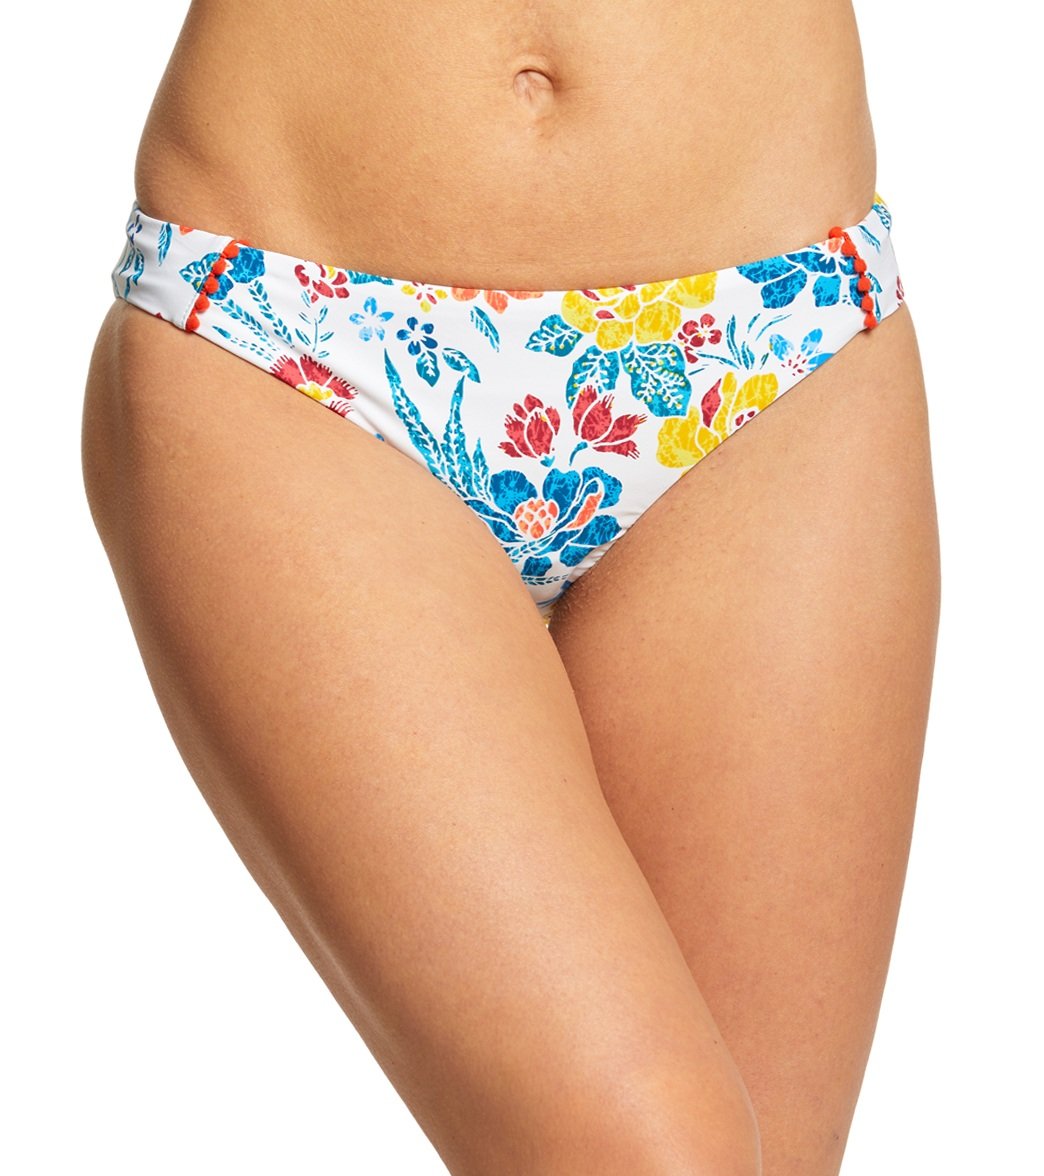 Lucky Brand Las Dalias Hipster Bikini Bottom - Multi Medium - Swimoutlet.com